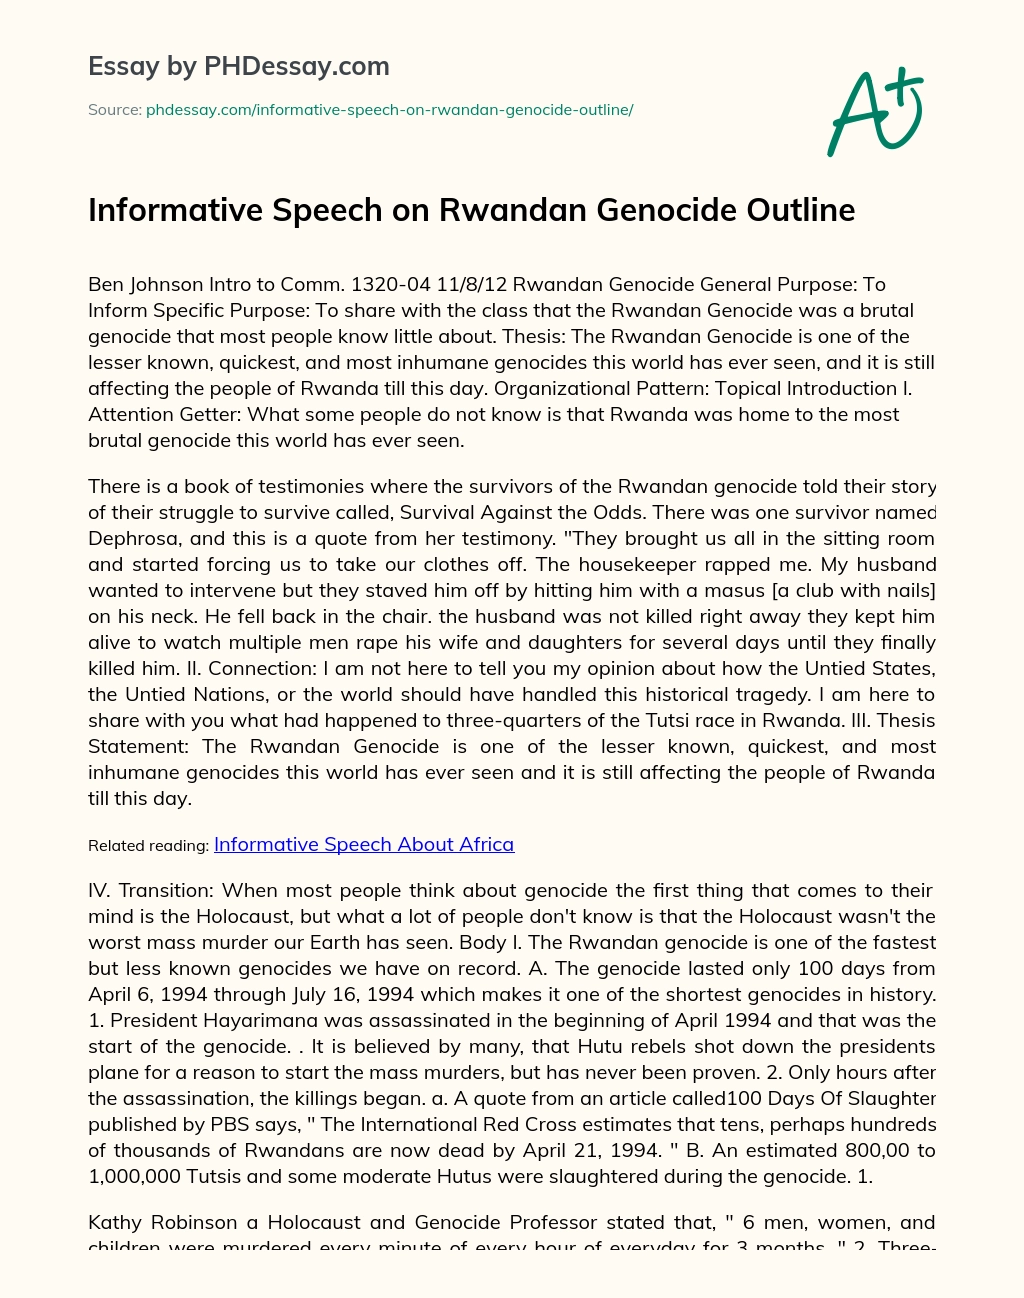 Informative Speech on Rwandan Genocide Outline essay